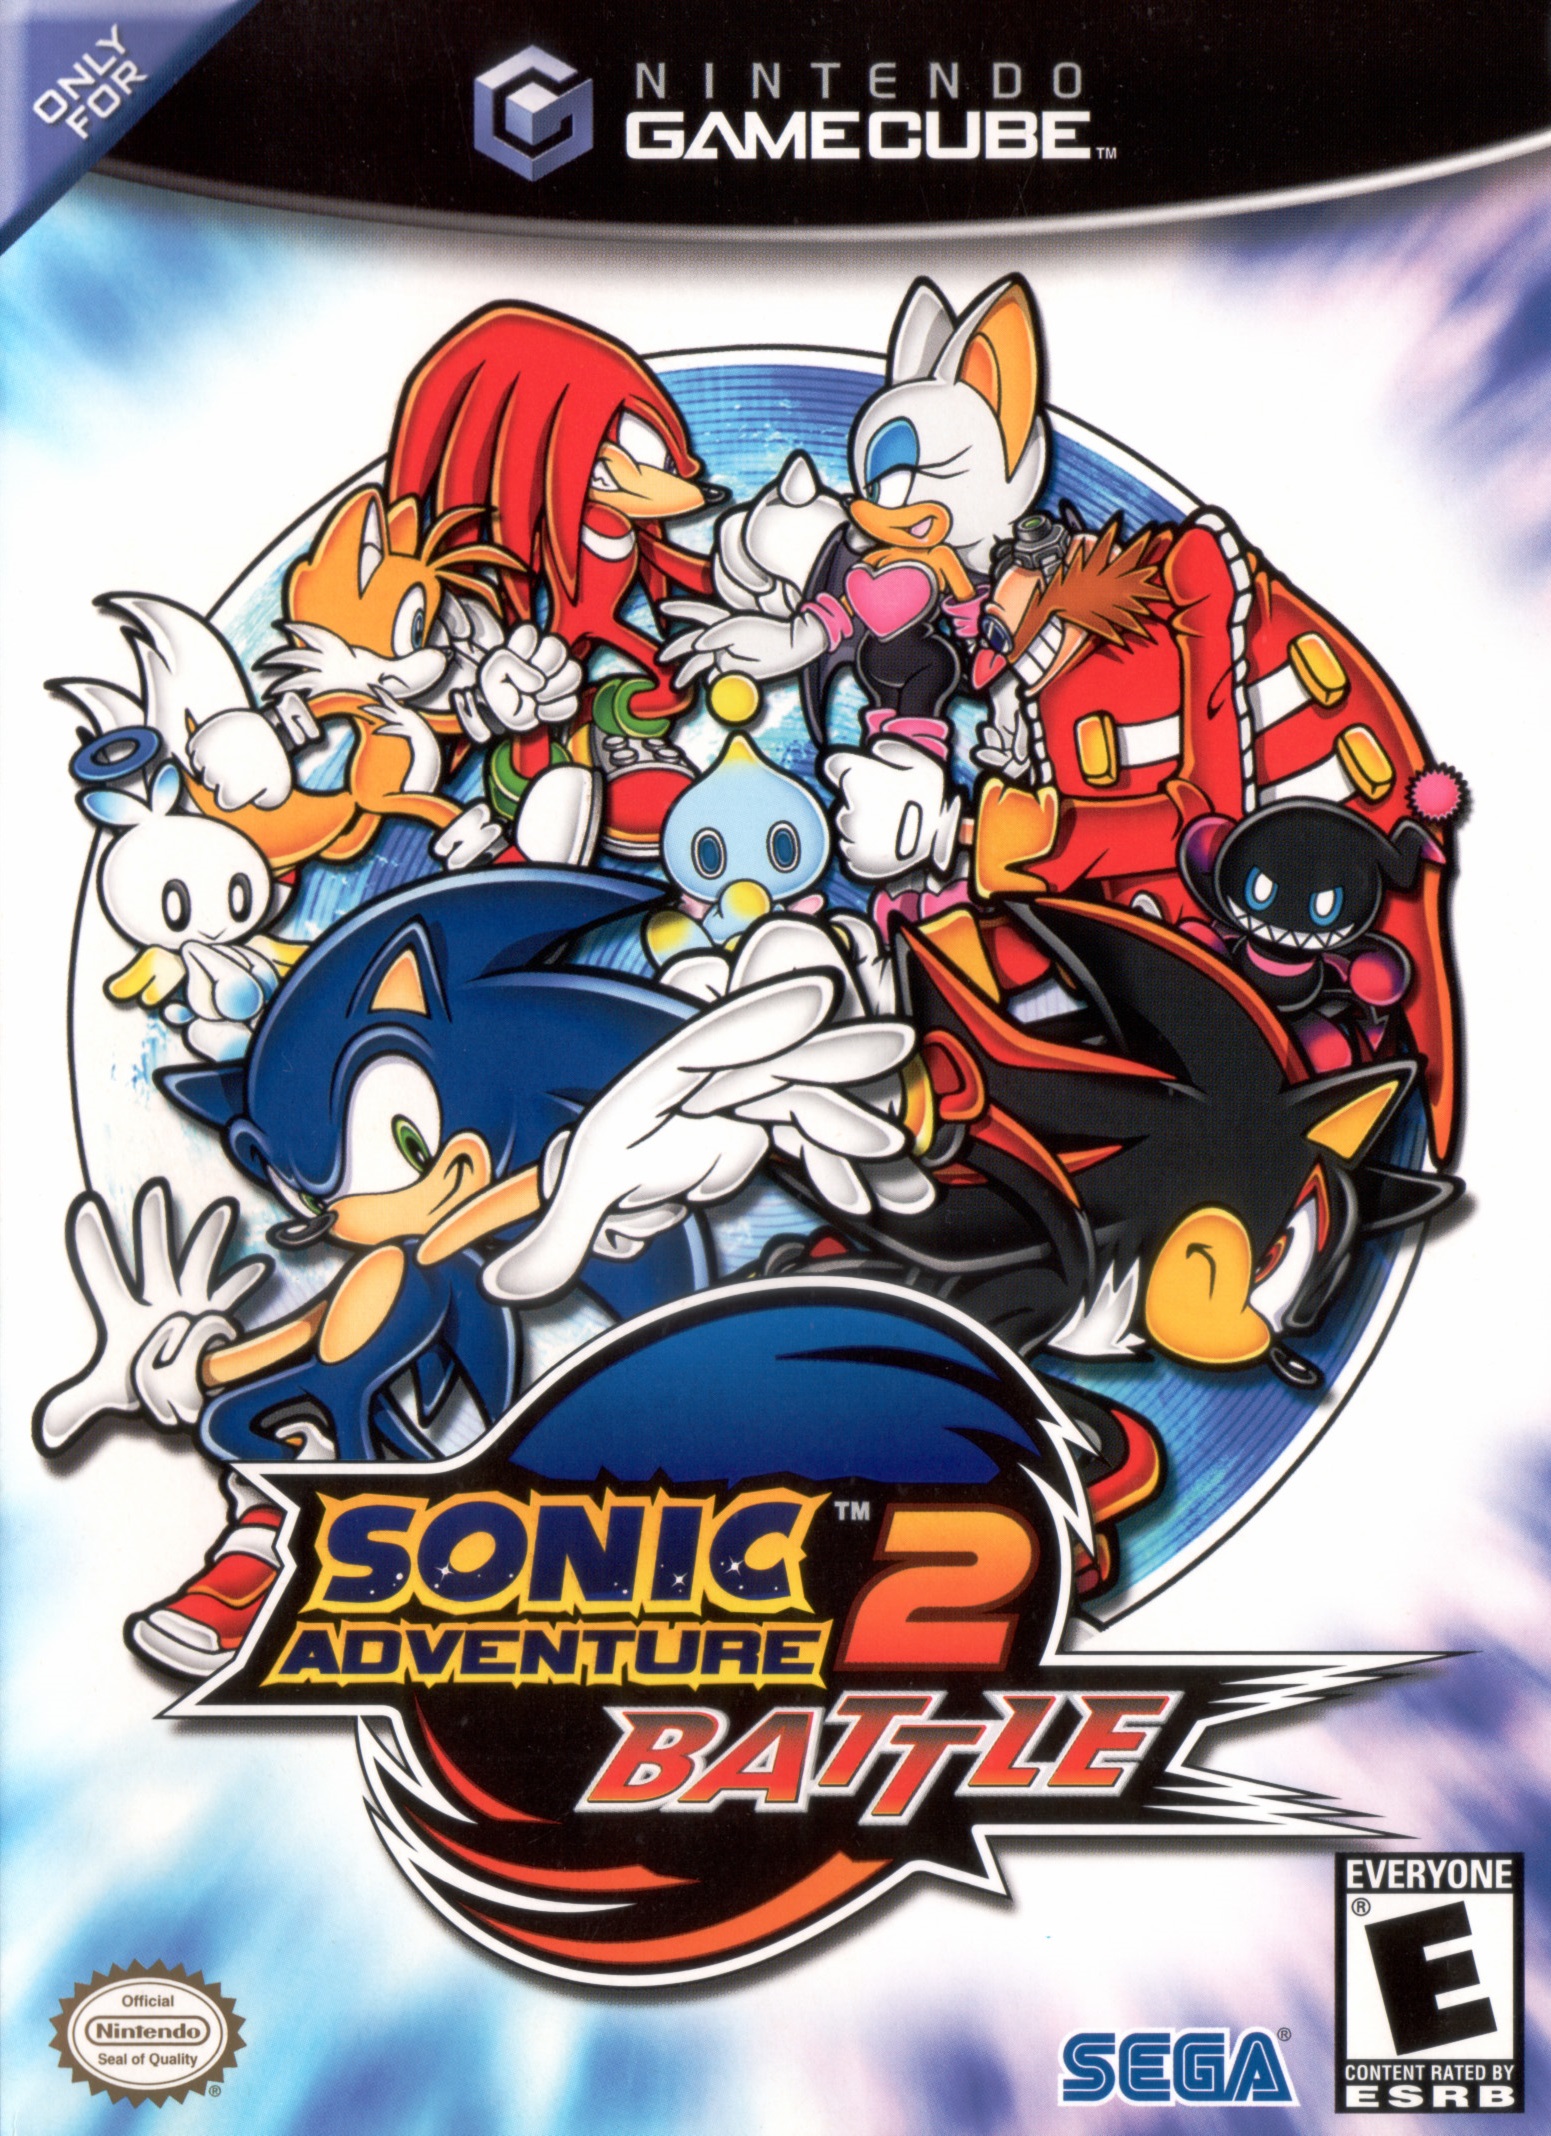 Sonic Adventure 2: Battle  Steam PC Downloadable Content